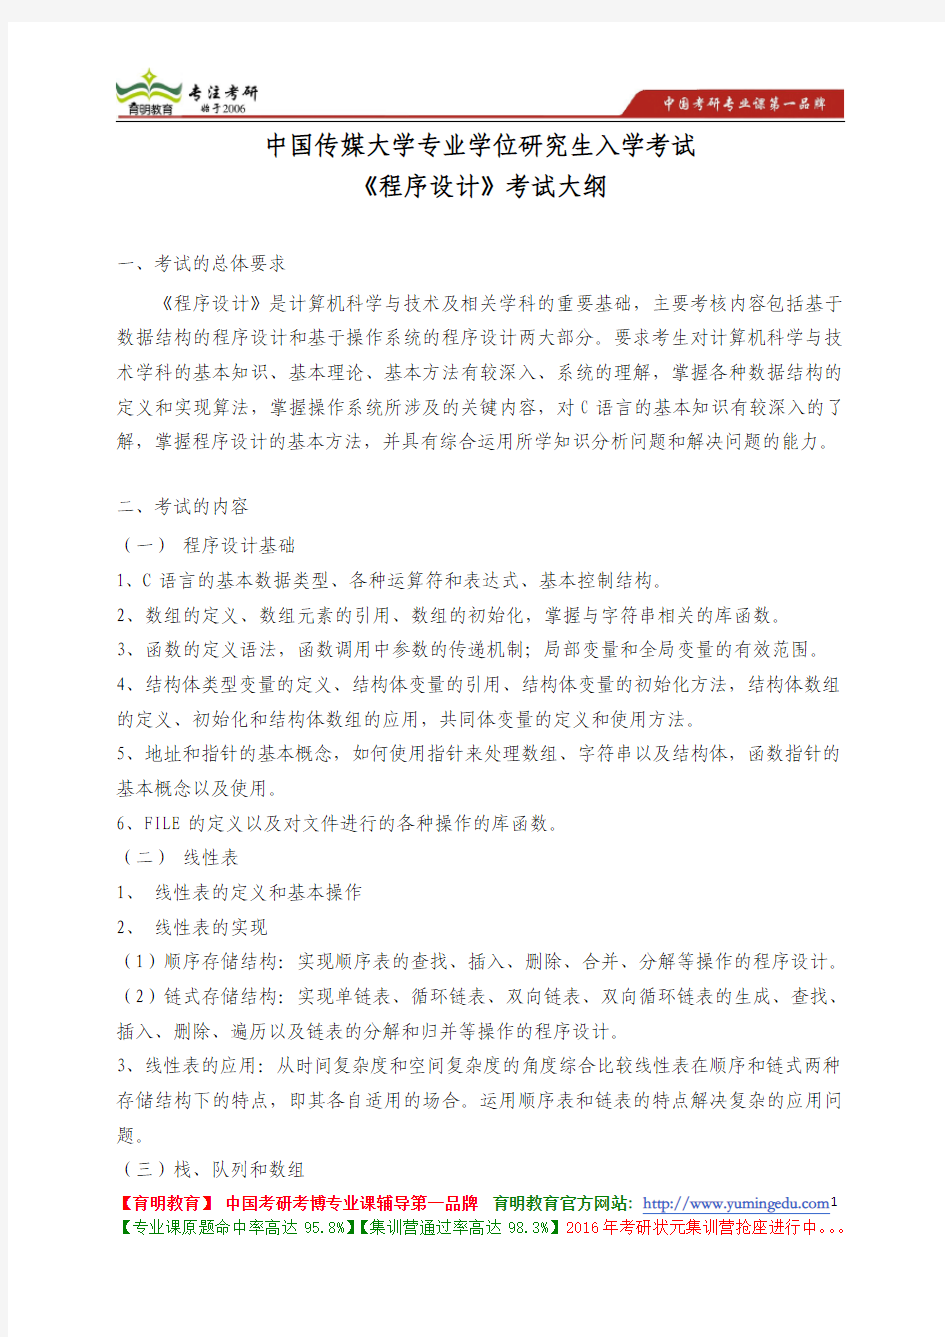 中国传媒大学 827《程序设计》考试大纲 考试题型 考试内容